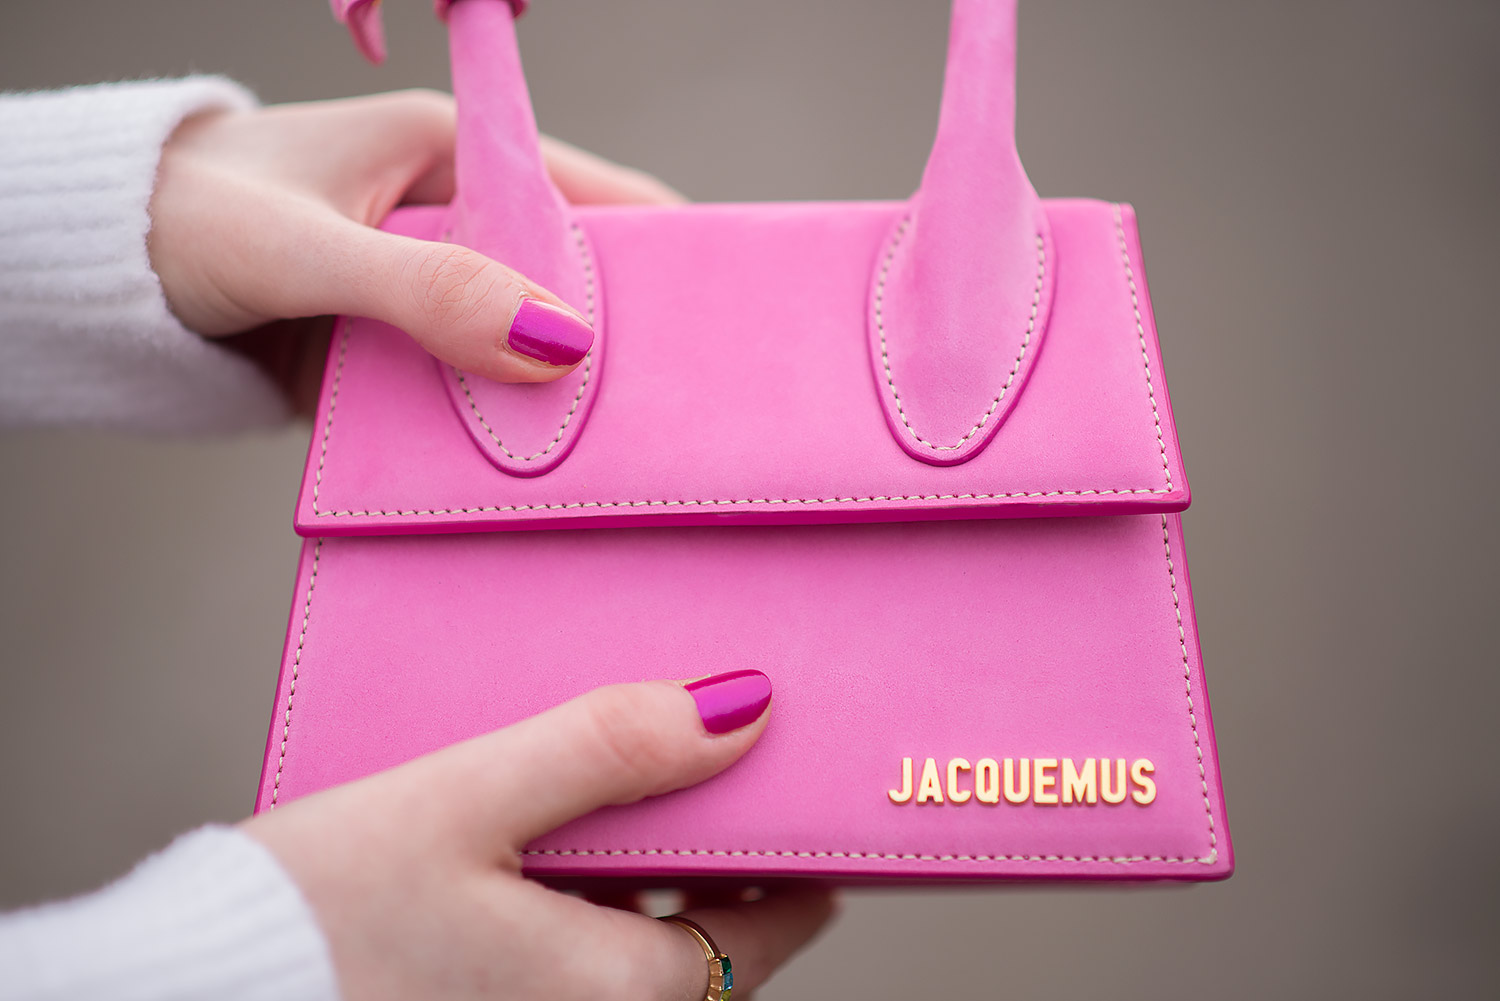 Jacquemus Le Chiquito Noeud Bag Review - FORD LA FEMME